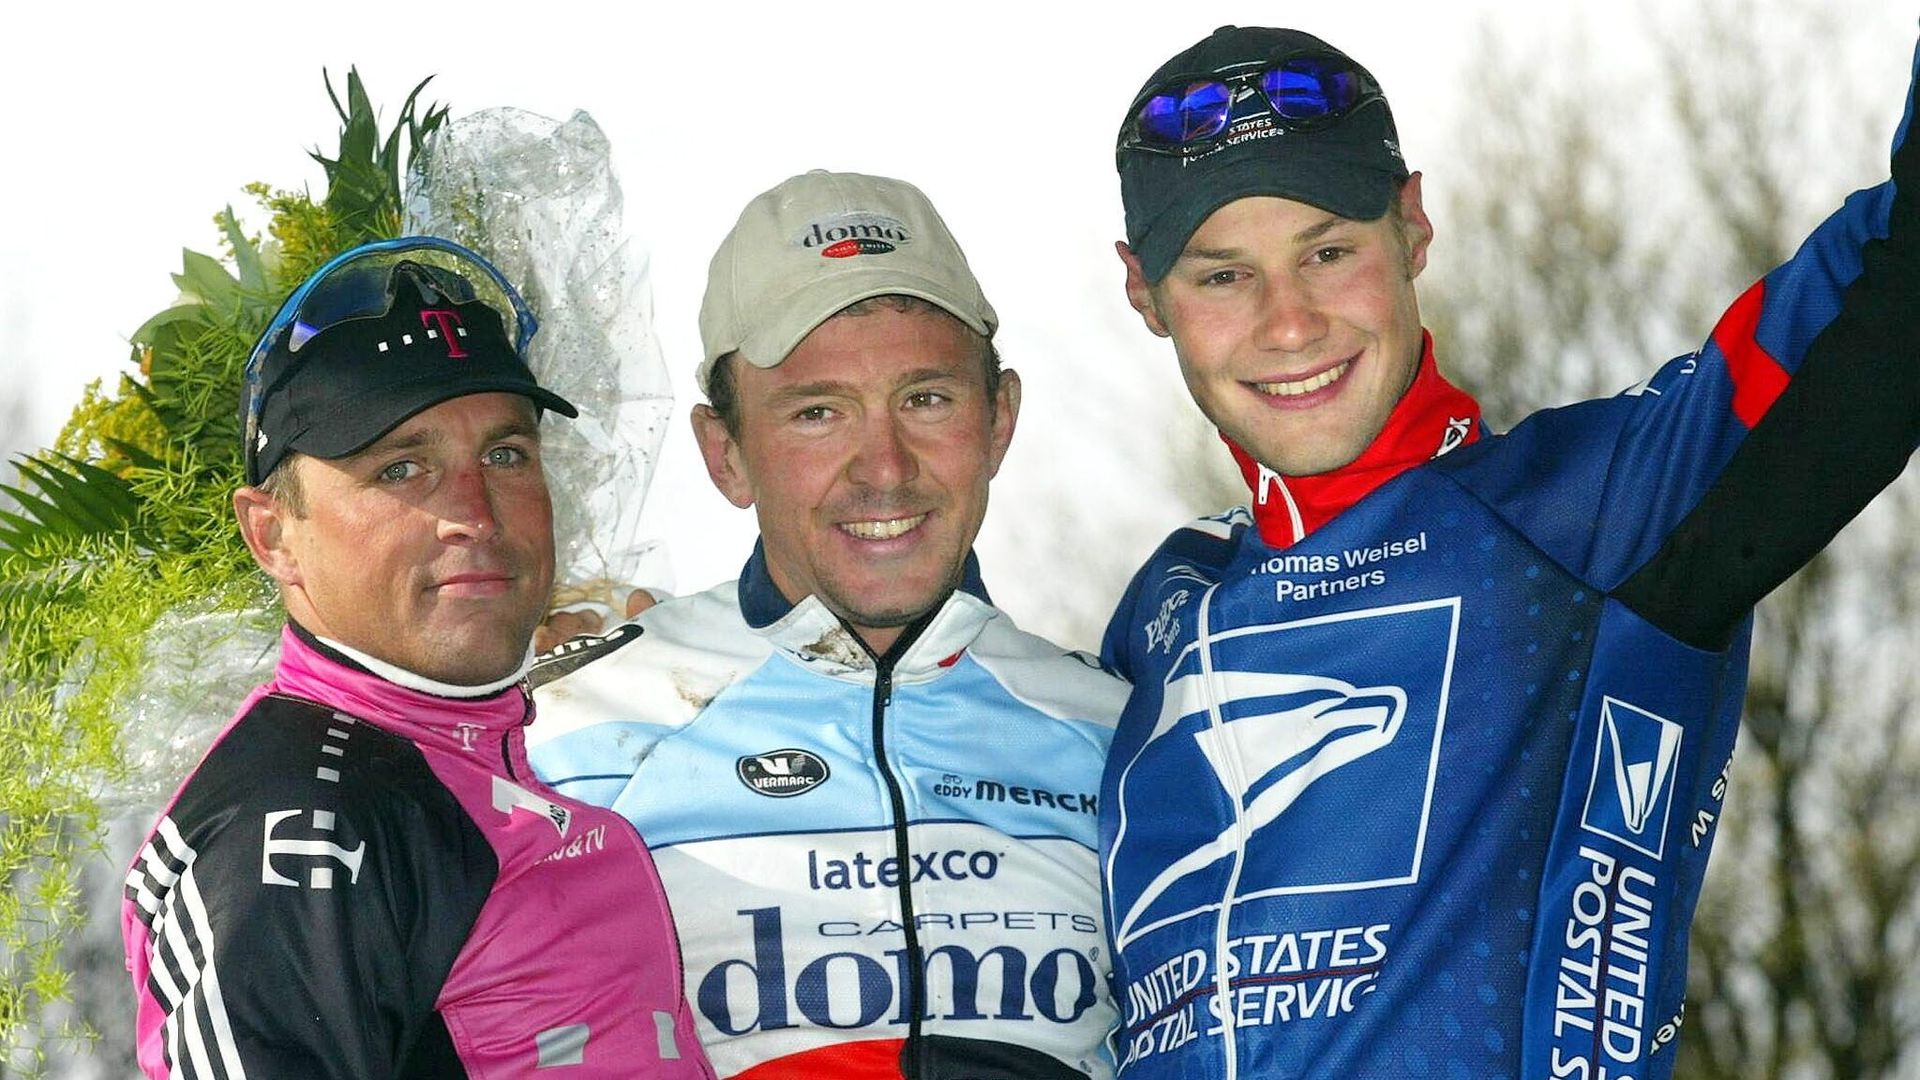 Le podium de Paris-Roubaix 2002 : Stefan Wesemann (2e), Johan Museeuw (vainqueur), Tom Boonen (3e) 